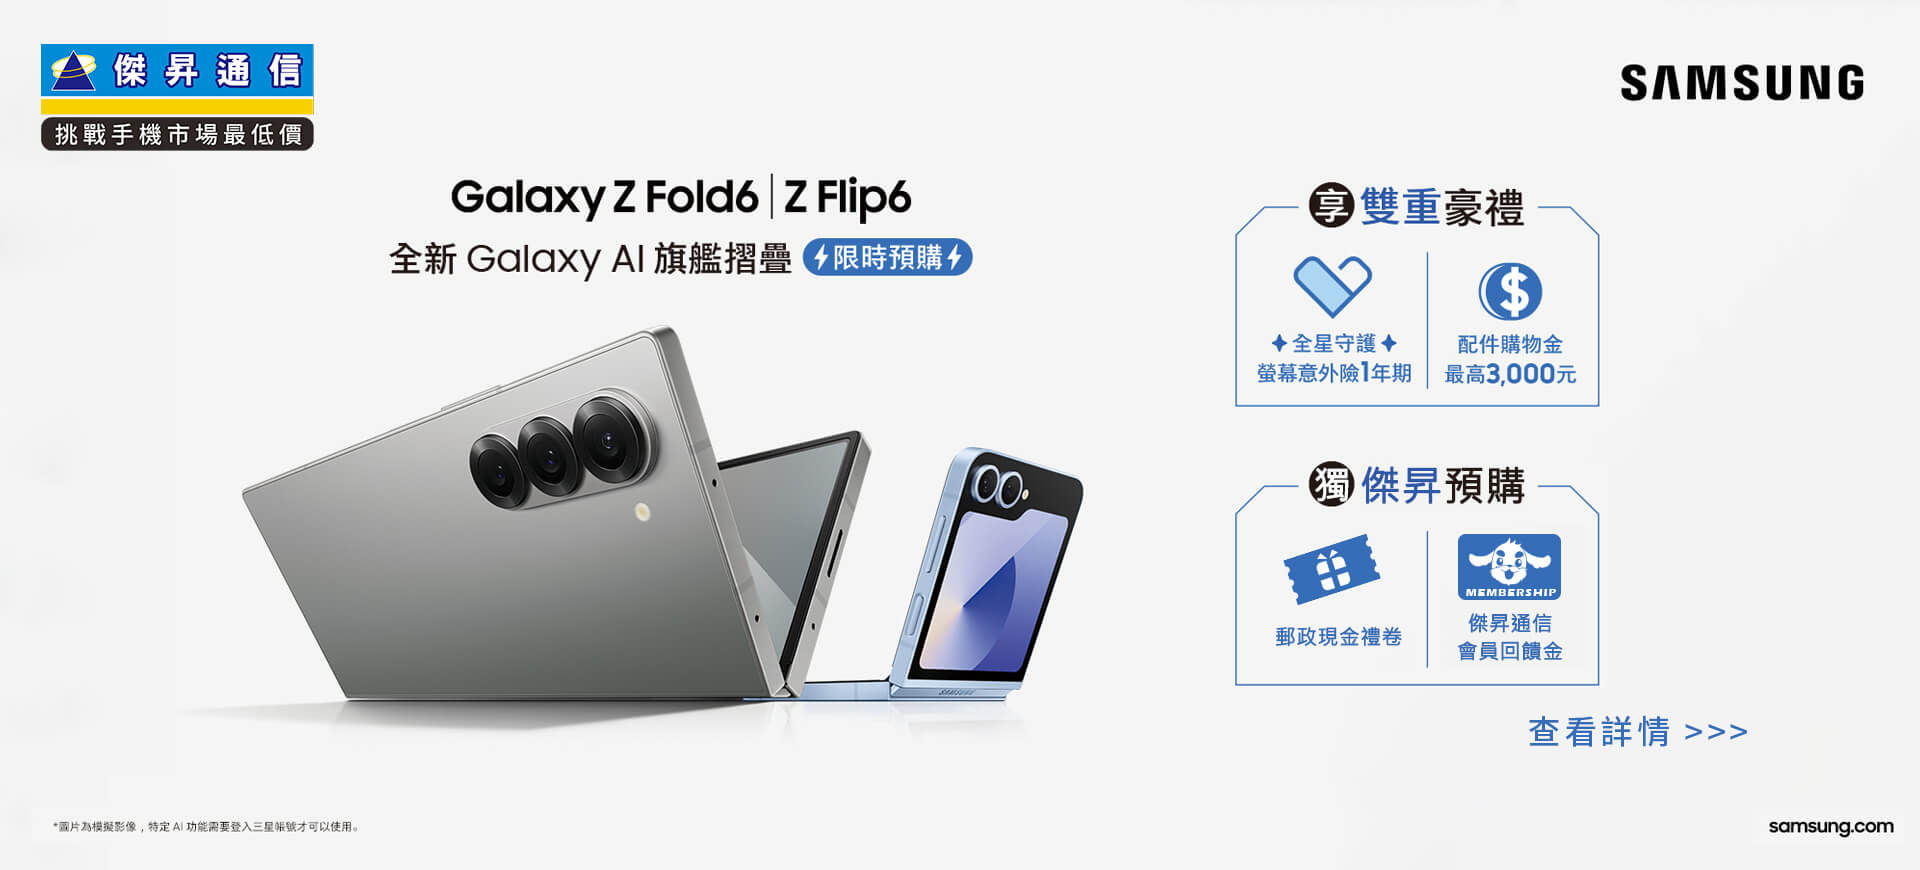 【新機預購】三星Z Fold6、Z Flip6系列開放預購中！三星預購禮享最高總價值$9,000，傑昇獨家再送預購好禮